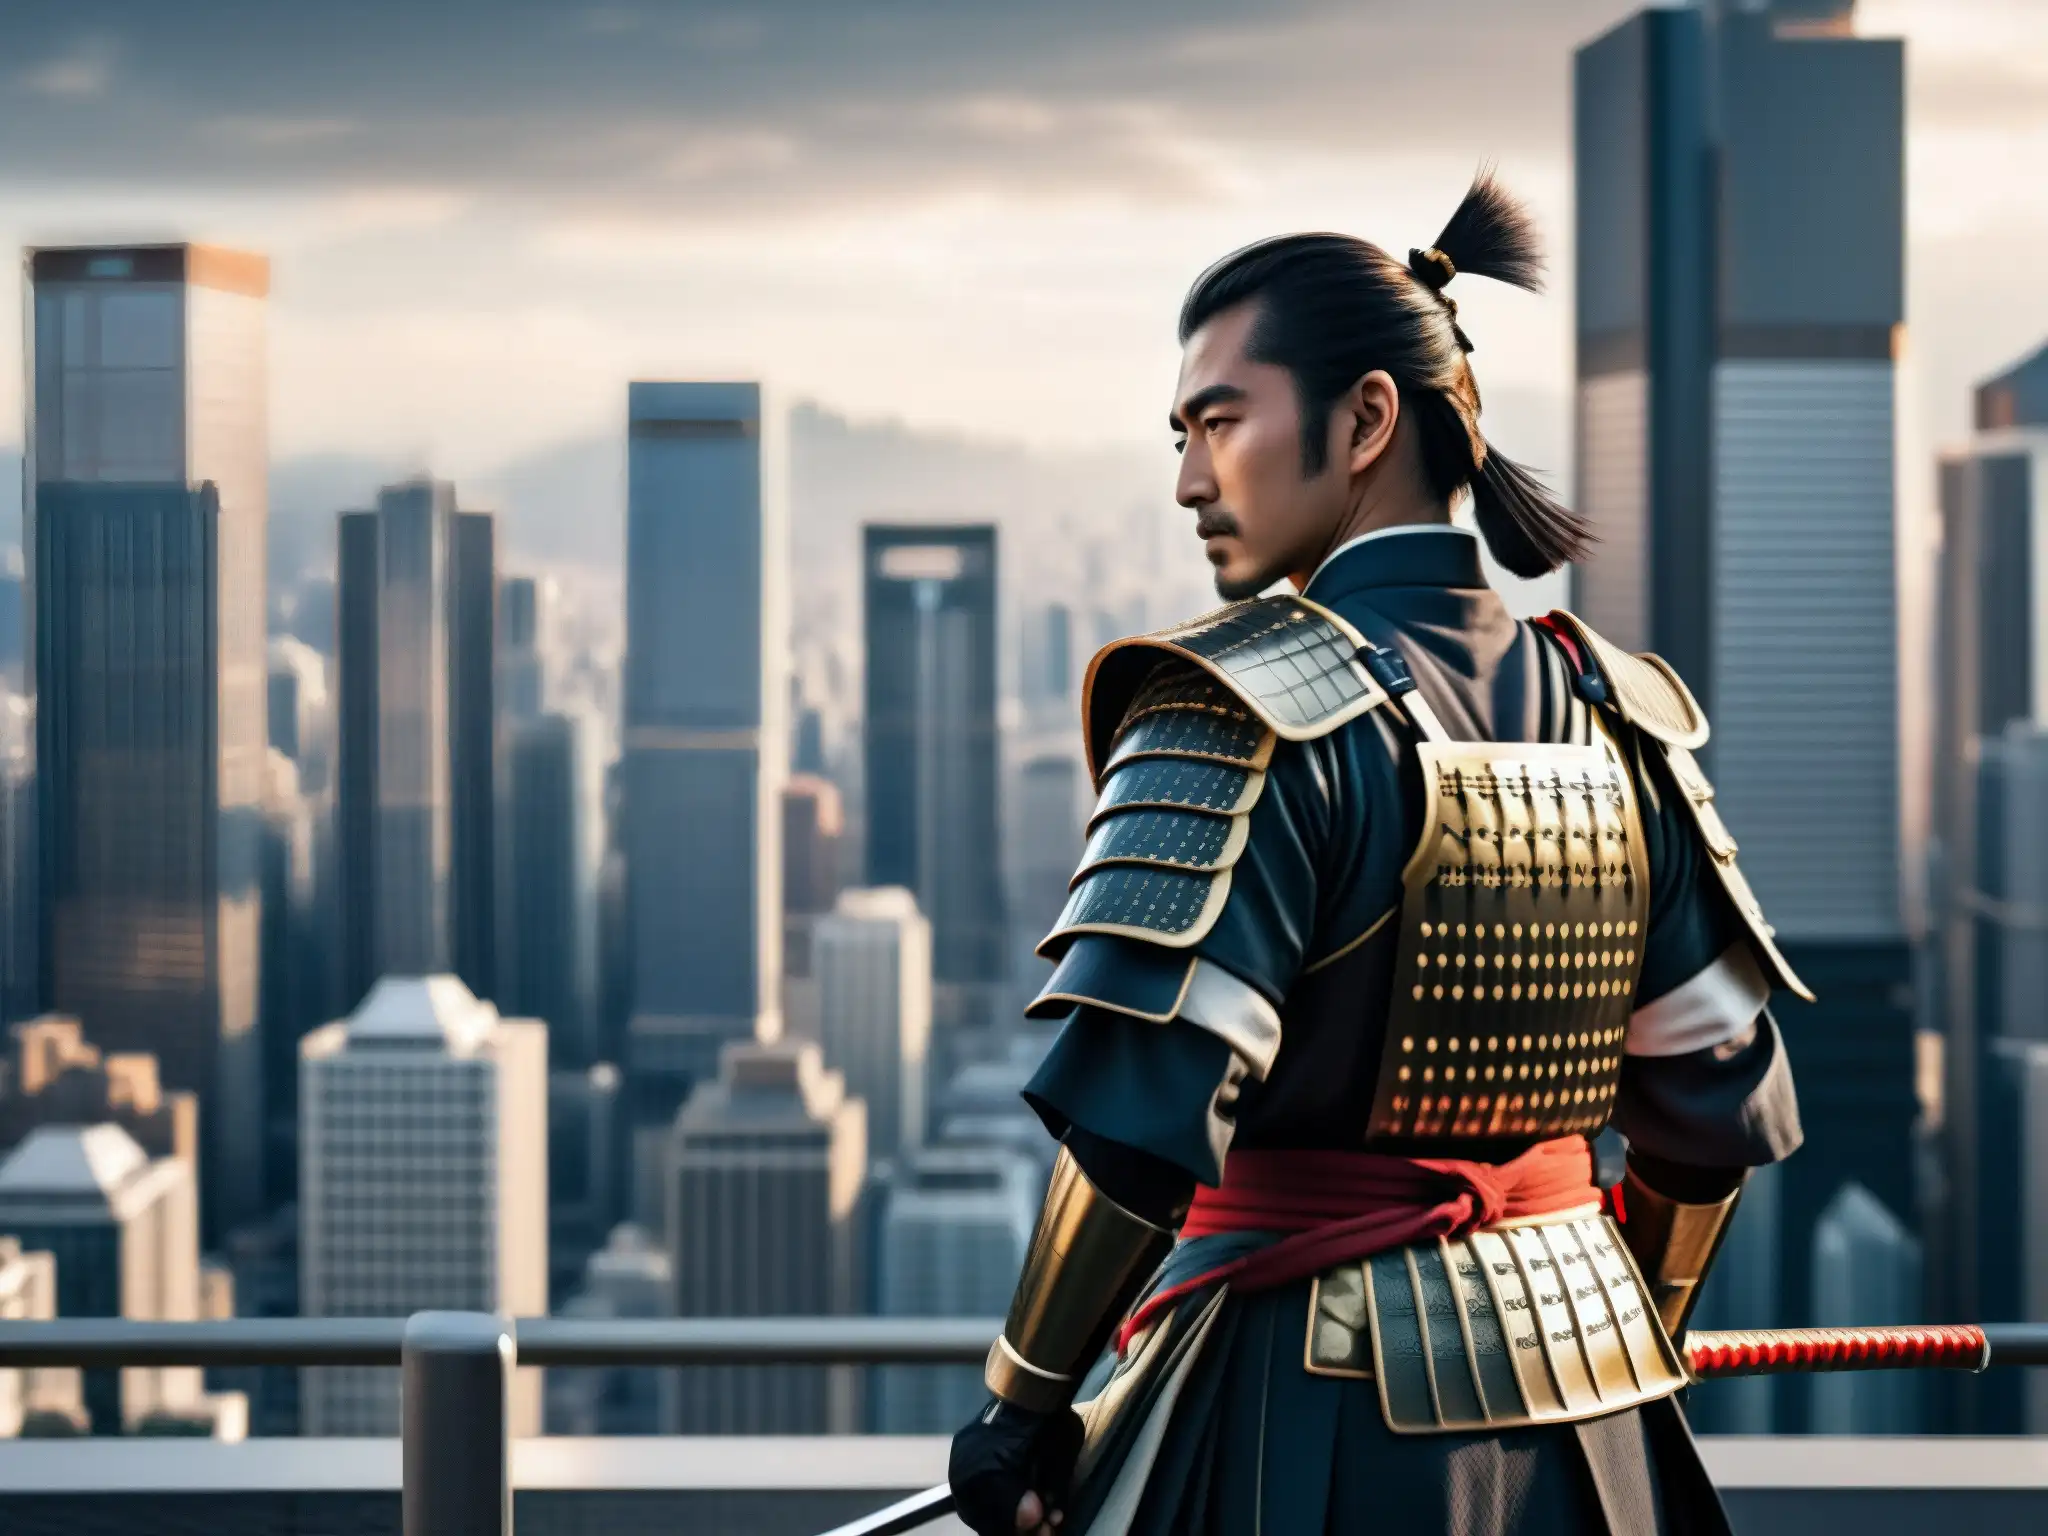 Un solitario samurái en armadura tradicional entre rascacielos, refleja la lucha interna de la tradición en la era moderna